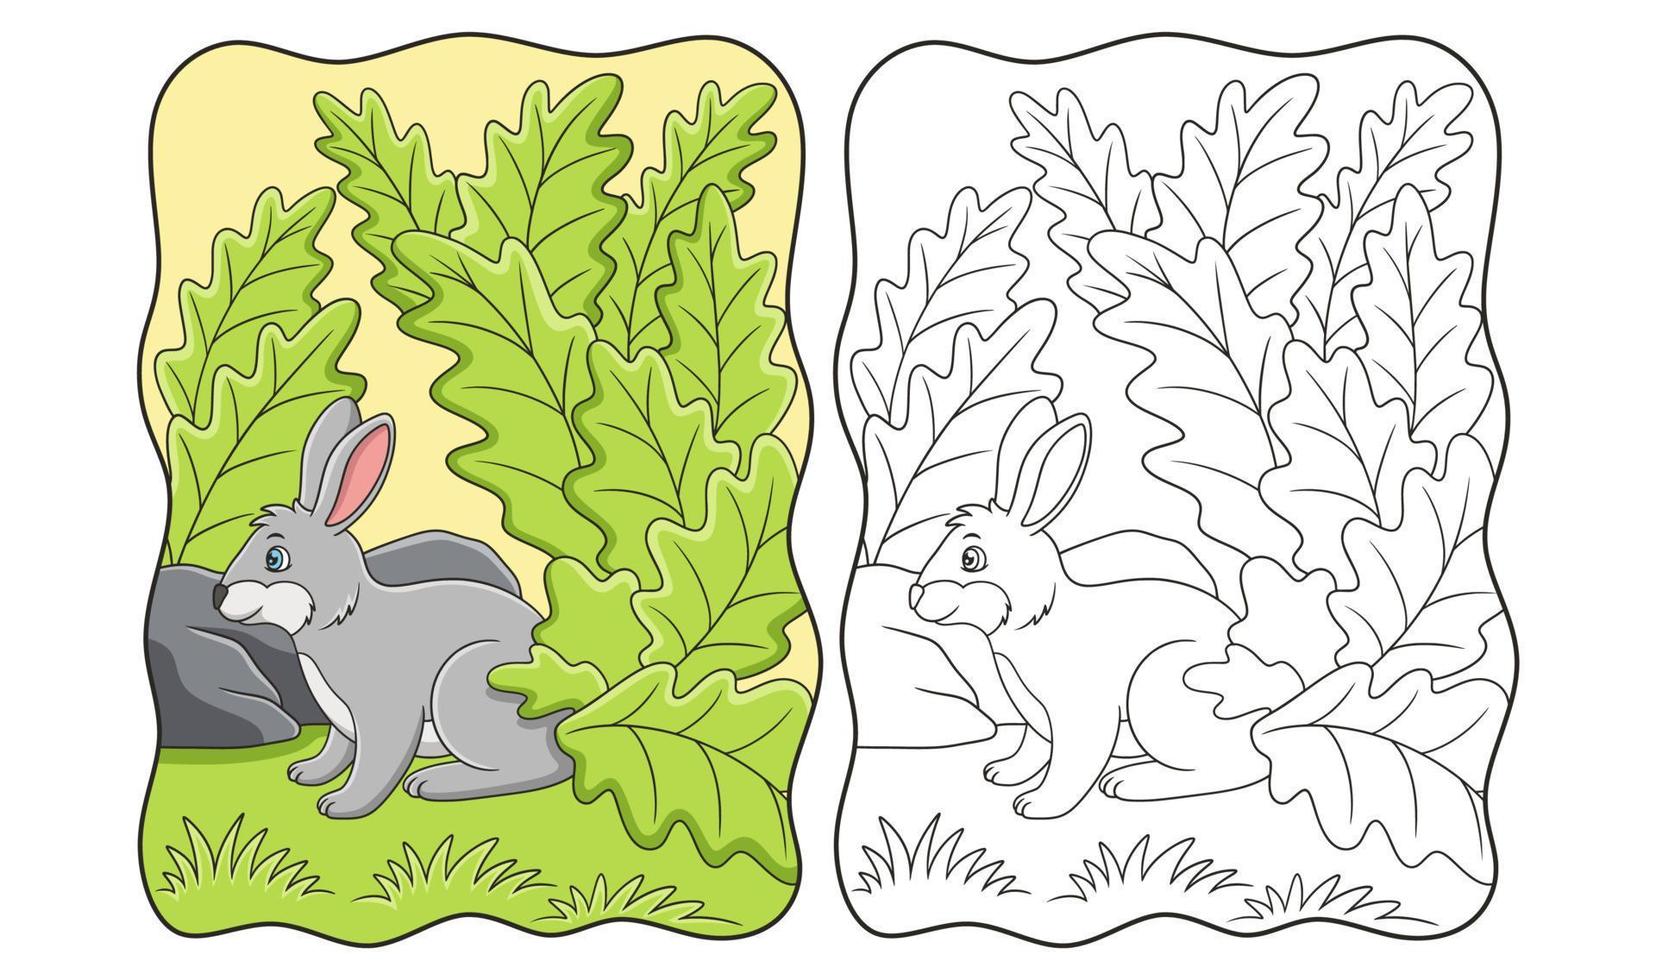 karikaturillustration kaninchen, die wegen der heißen sonne nach nahrung und unter den blättern eines großen baums suchen, buch oder seite für kinder vektor